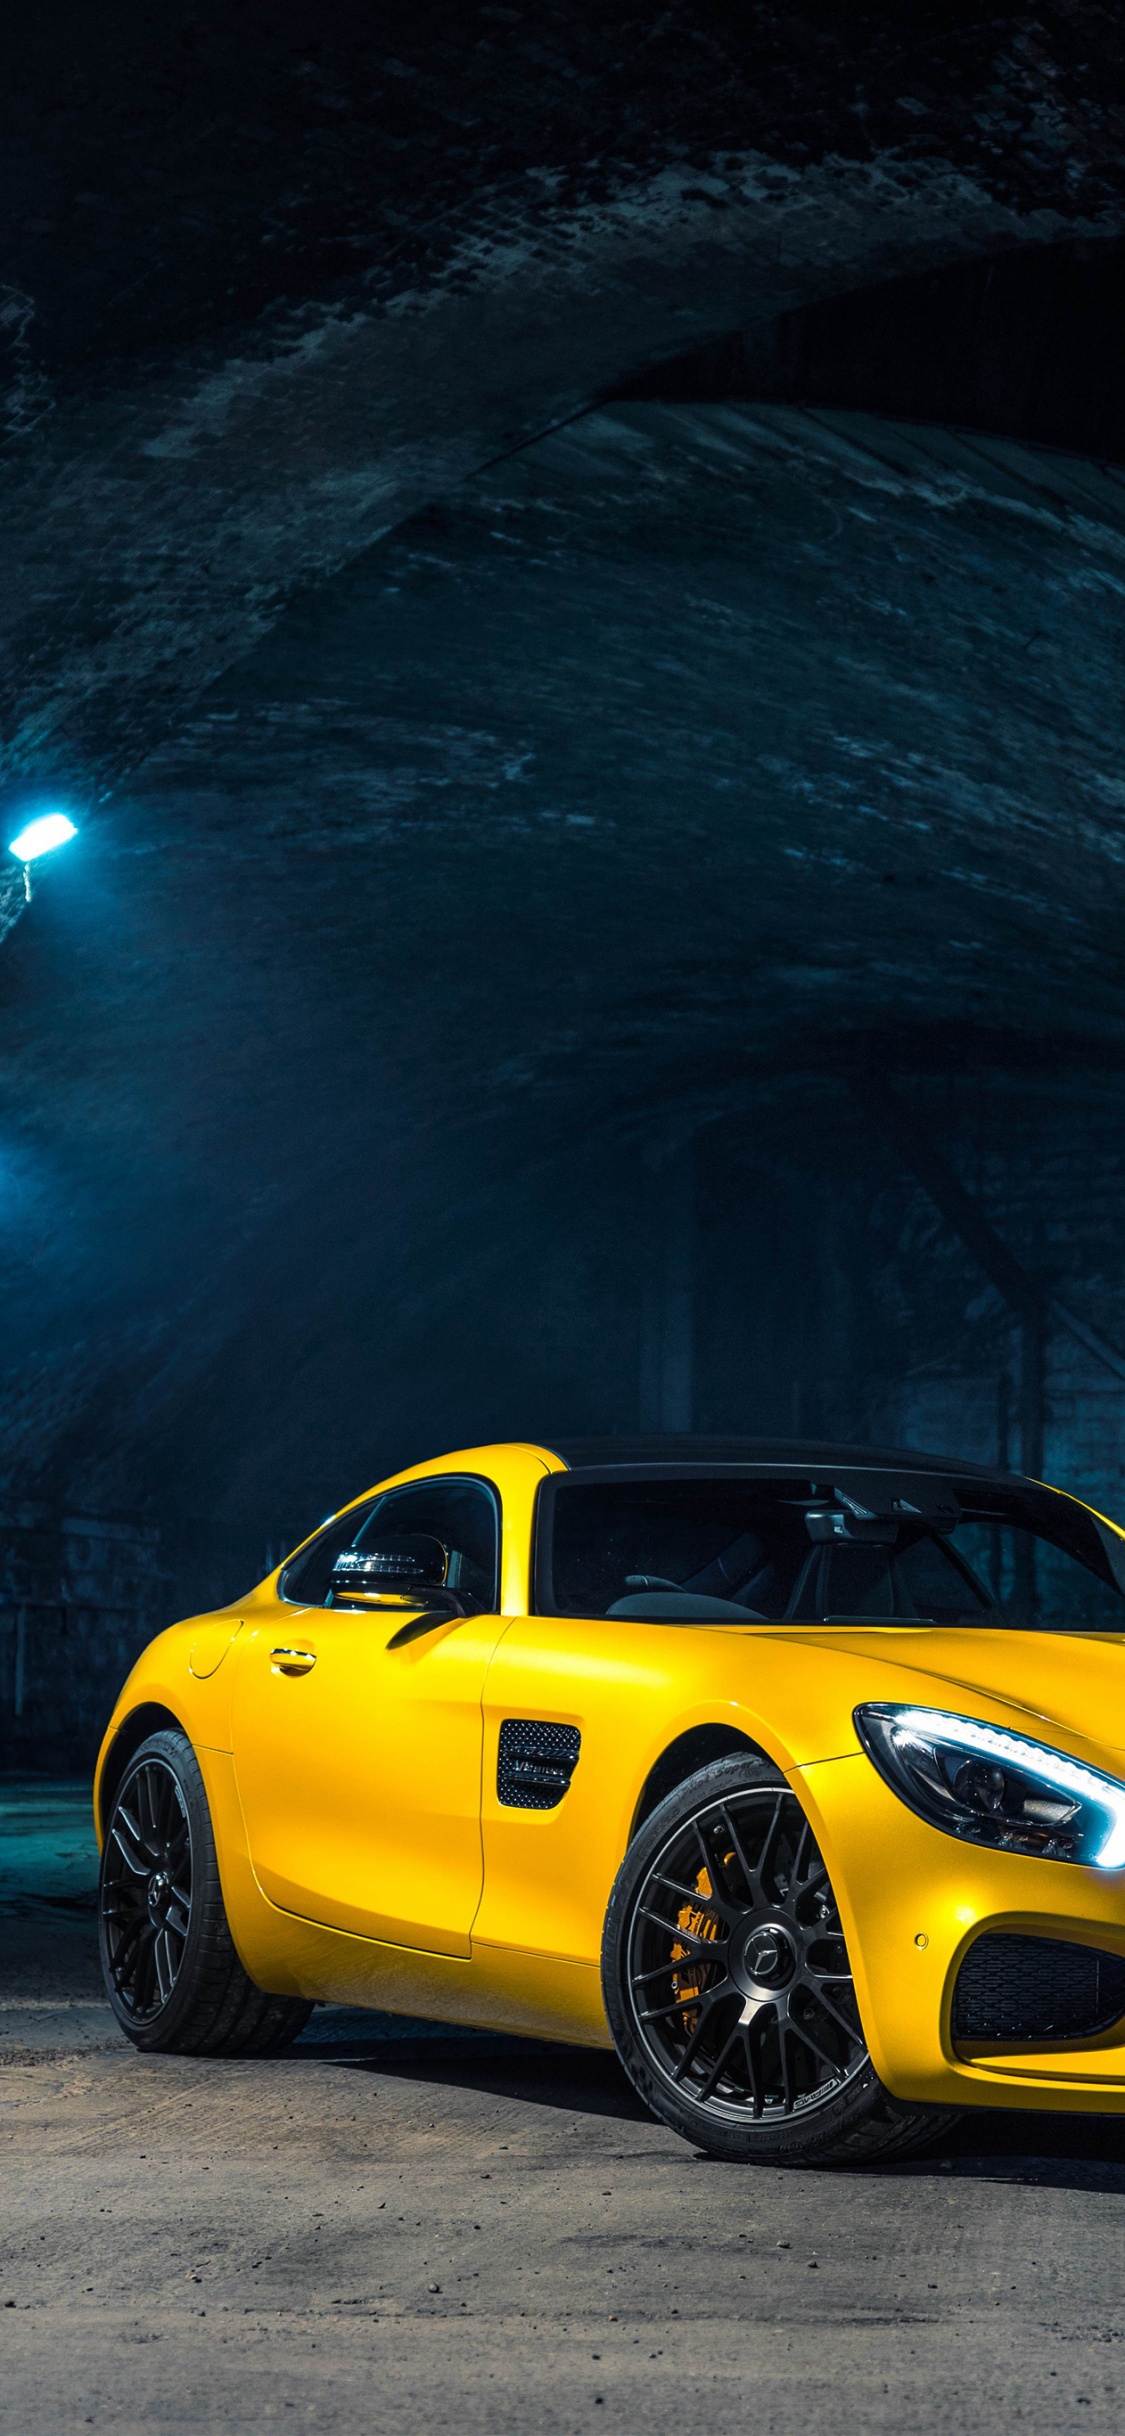 Gelber Porsche 911 im Tunnel Geparkt. Wallpaper in 1125x2436 Resolution